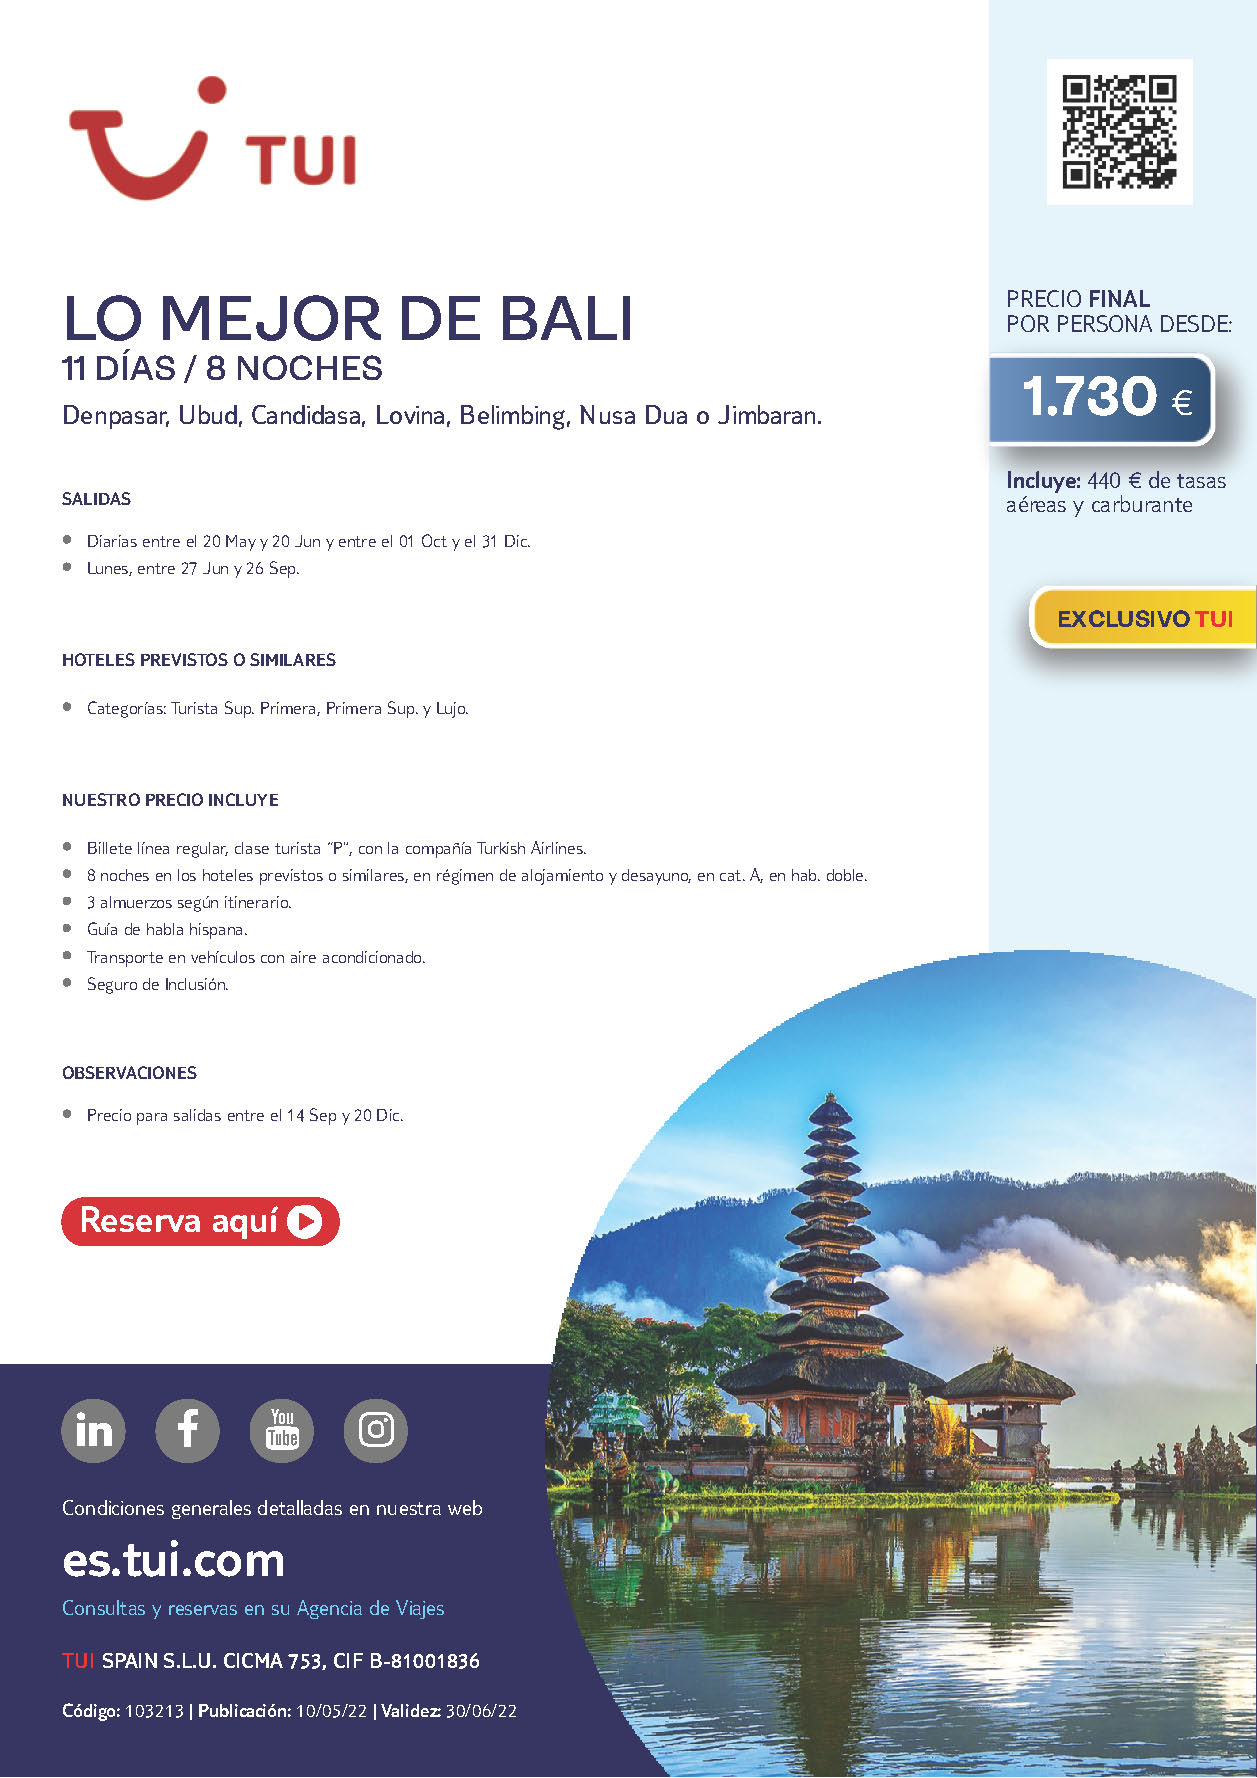 Oferta TUI Lo Mejor de Bali 11 dias salidas de Mayo a Diciembre 2022 desde Madrid Barcelona Bilbao Valencia vuelos Turkish Airlines